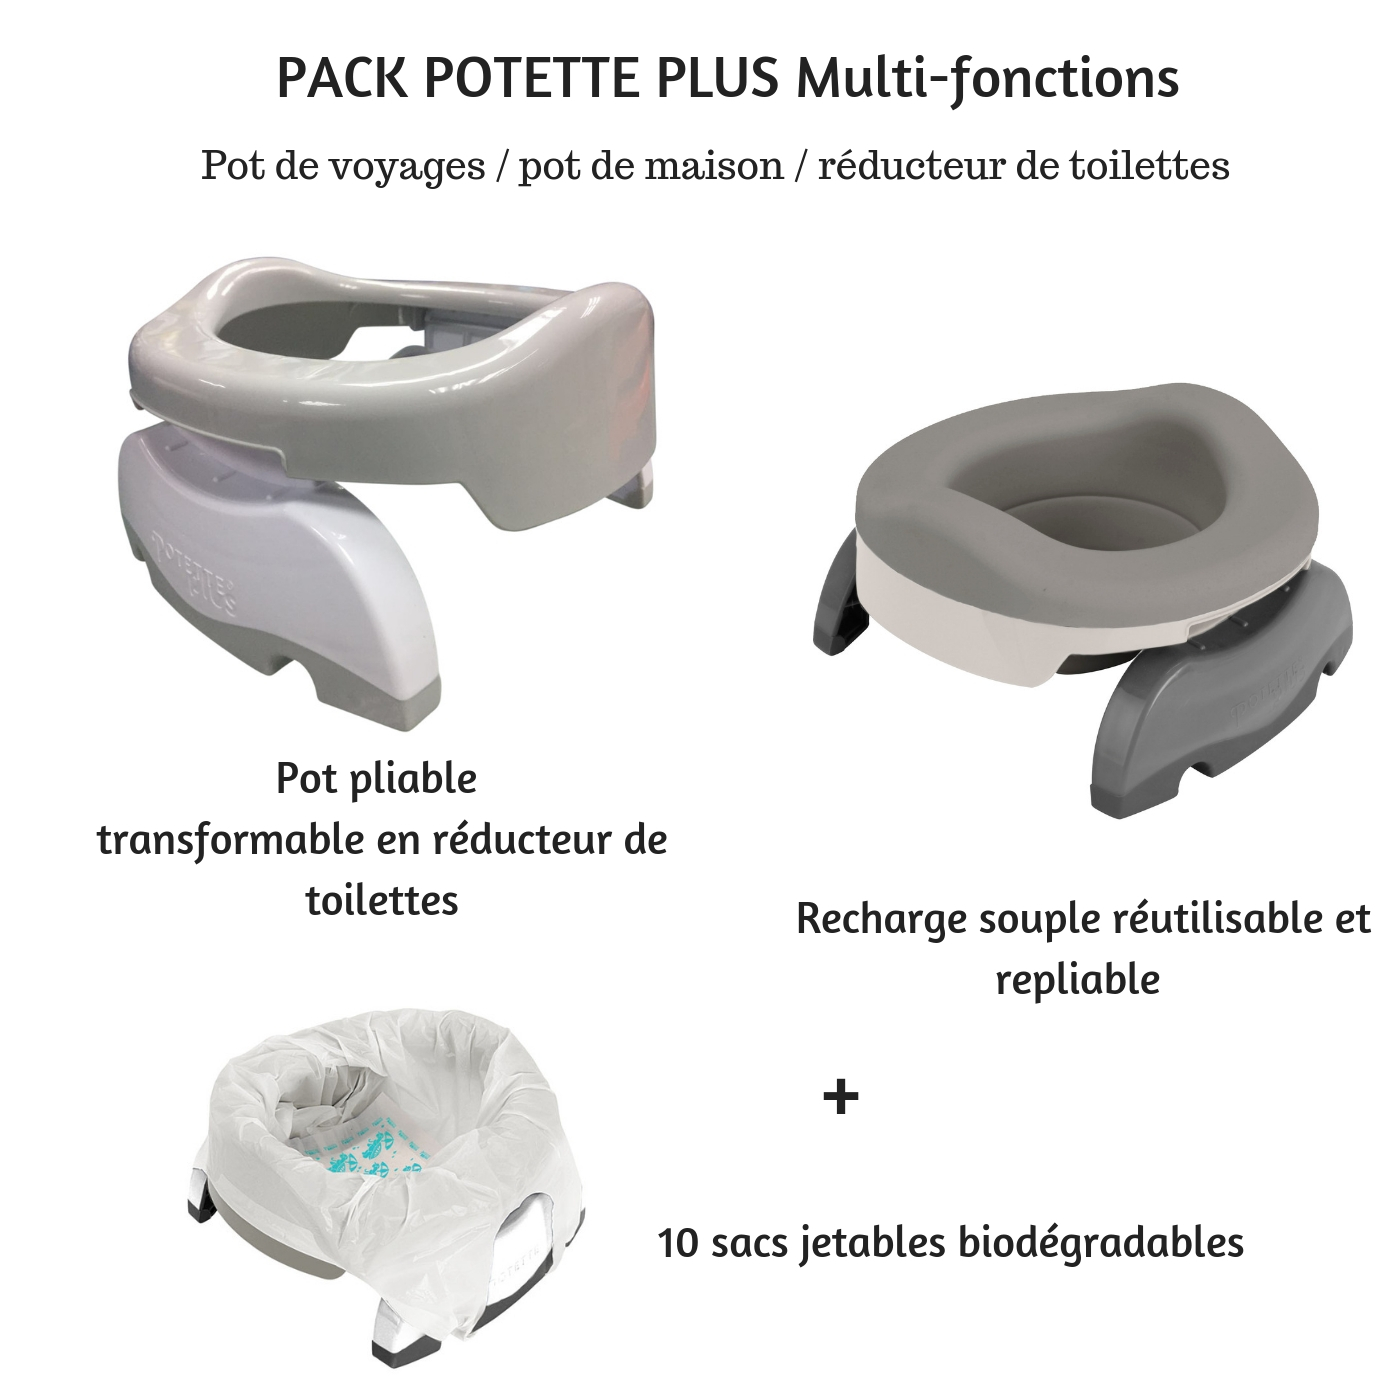 Potette Plus, pot et accessoire toilettes, Pot de voyage 2 en 1